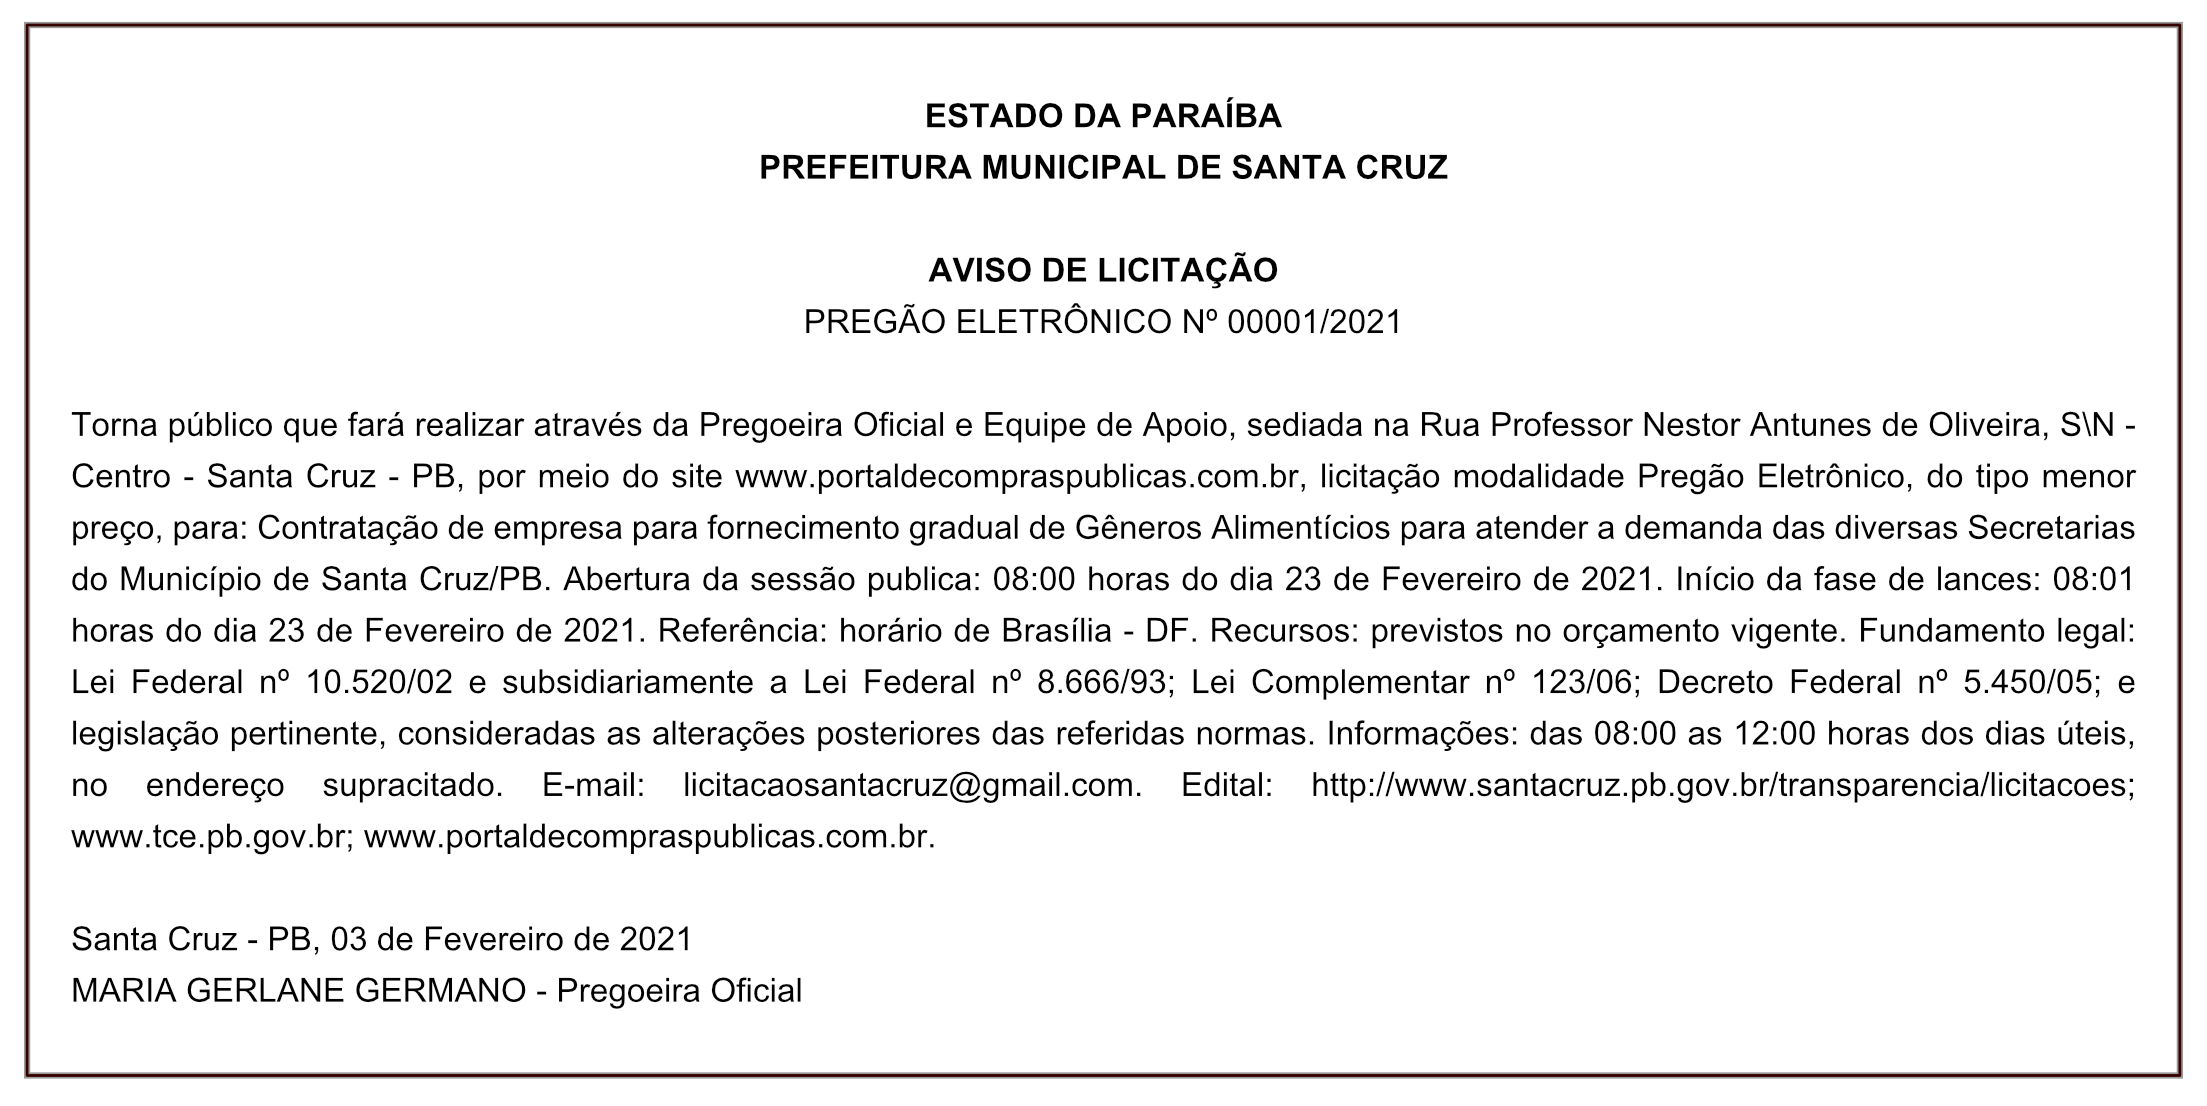 PREFEITURA MUNICIPAL DE SANTA CRUZ – AVISO DE LICITAÇÃO – PREGÃO ELETRÔNICO Nº 00001/2021